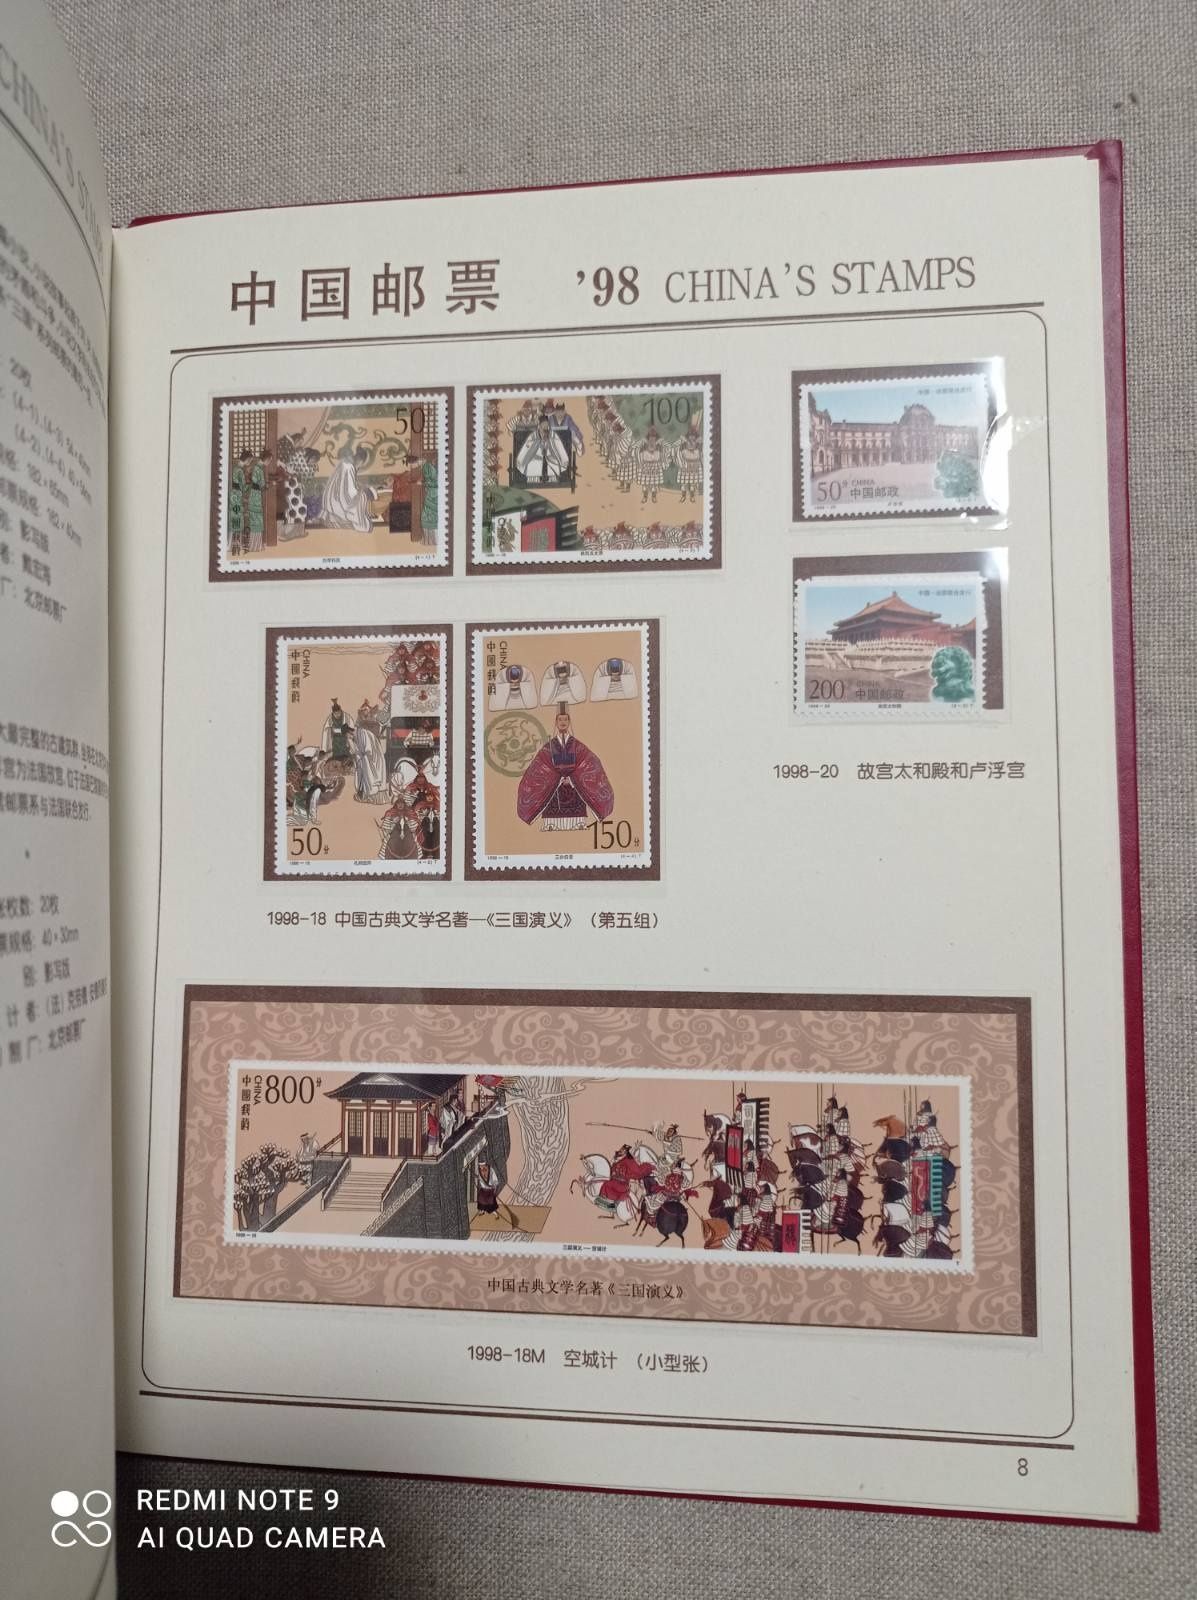 Ежегодный альбом с марками China's Stamps 1998